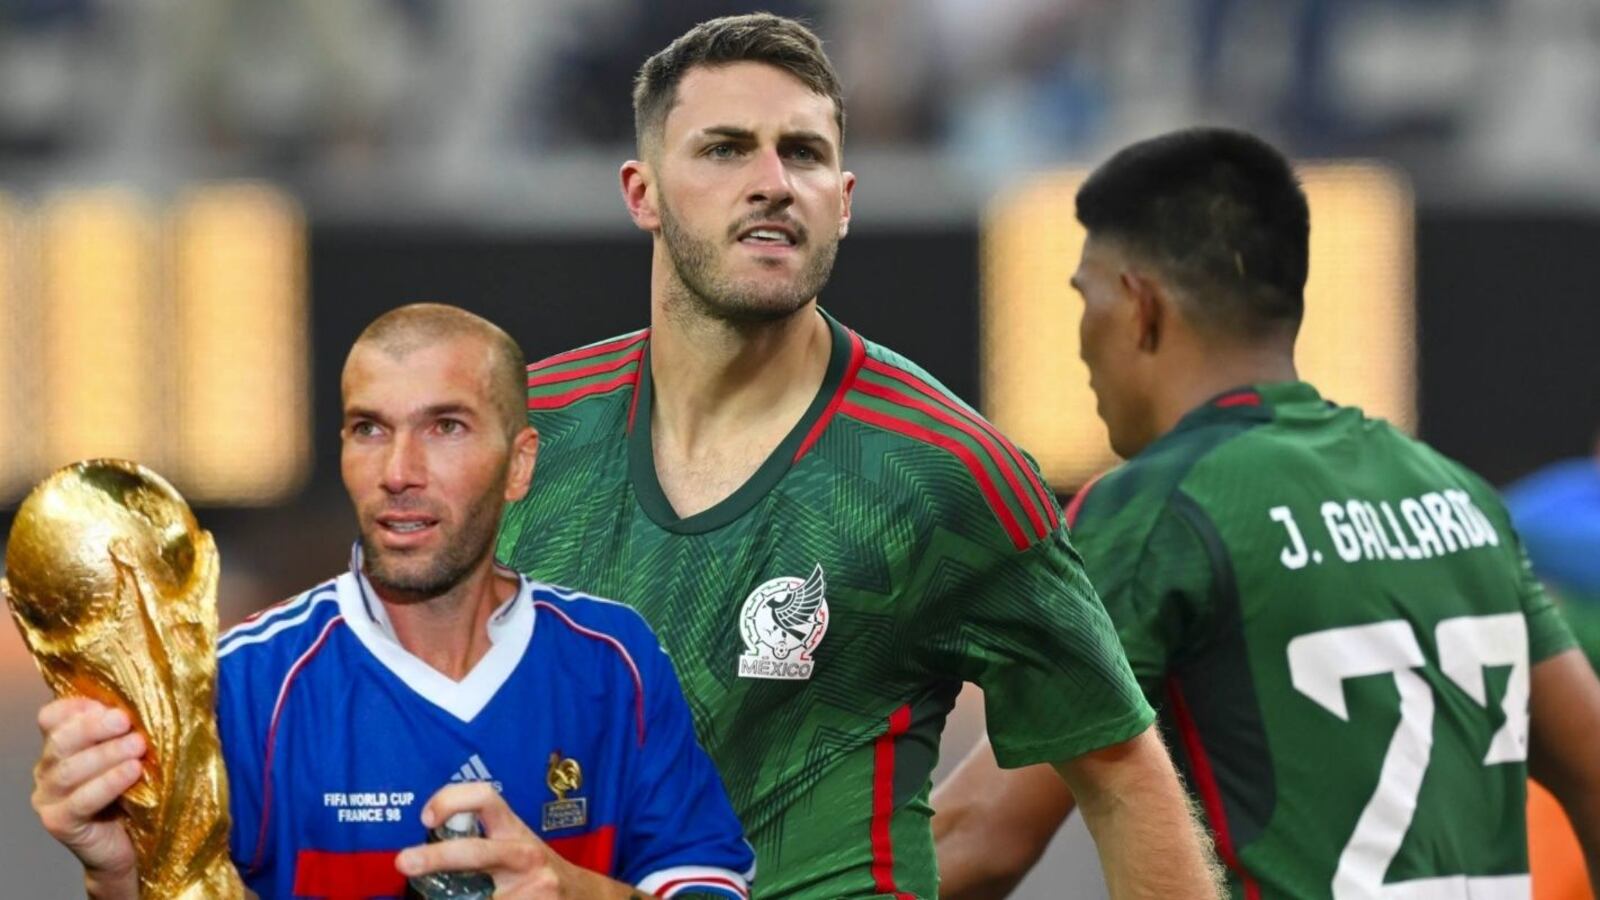 Ganó un Mundial al lado de Zidane, ahora dice admirar los goles de Santi Giménez